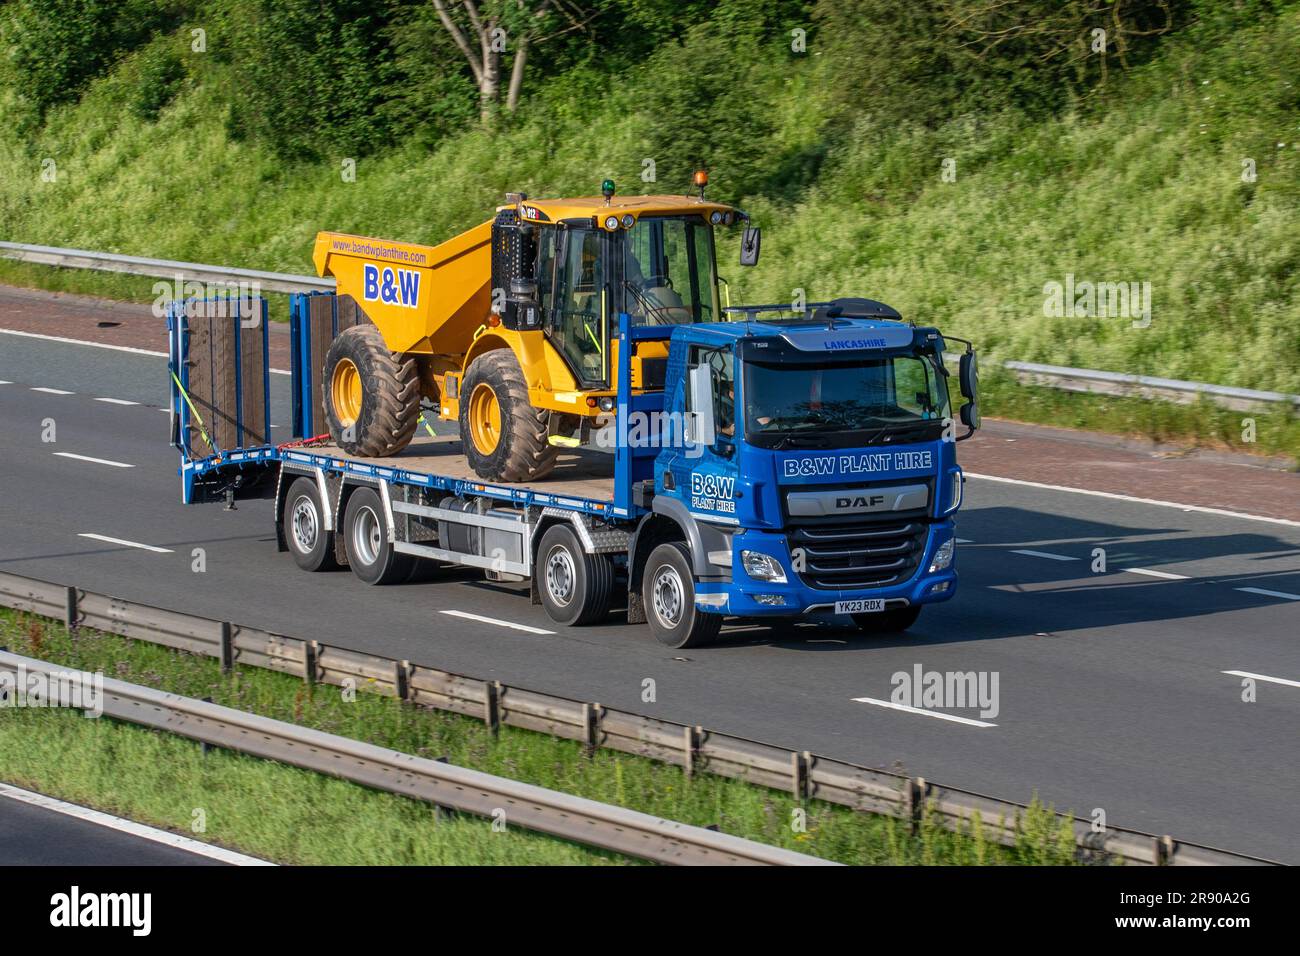 B&W Plant Hire & Sales Ltd La nouvelle série Hydrema 912g de tombereaux à benne basculante est transportée par une usine de location de camions DAF de B&W ; elle se déplace sur l'autoroute M6 du Grand Manchester, au Royaume-Uni Banque D'Images